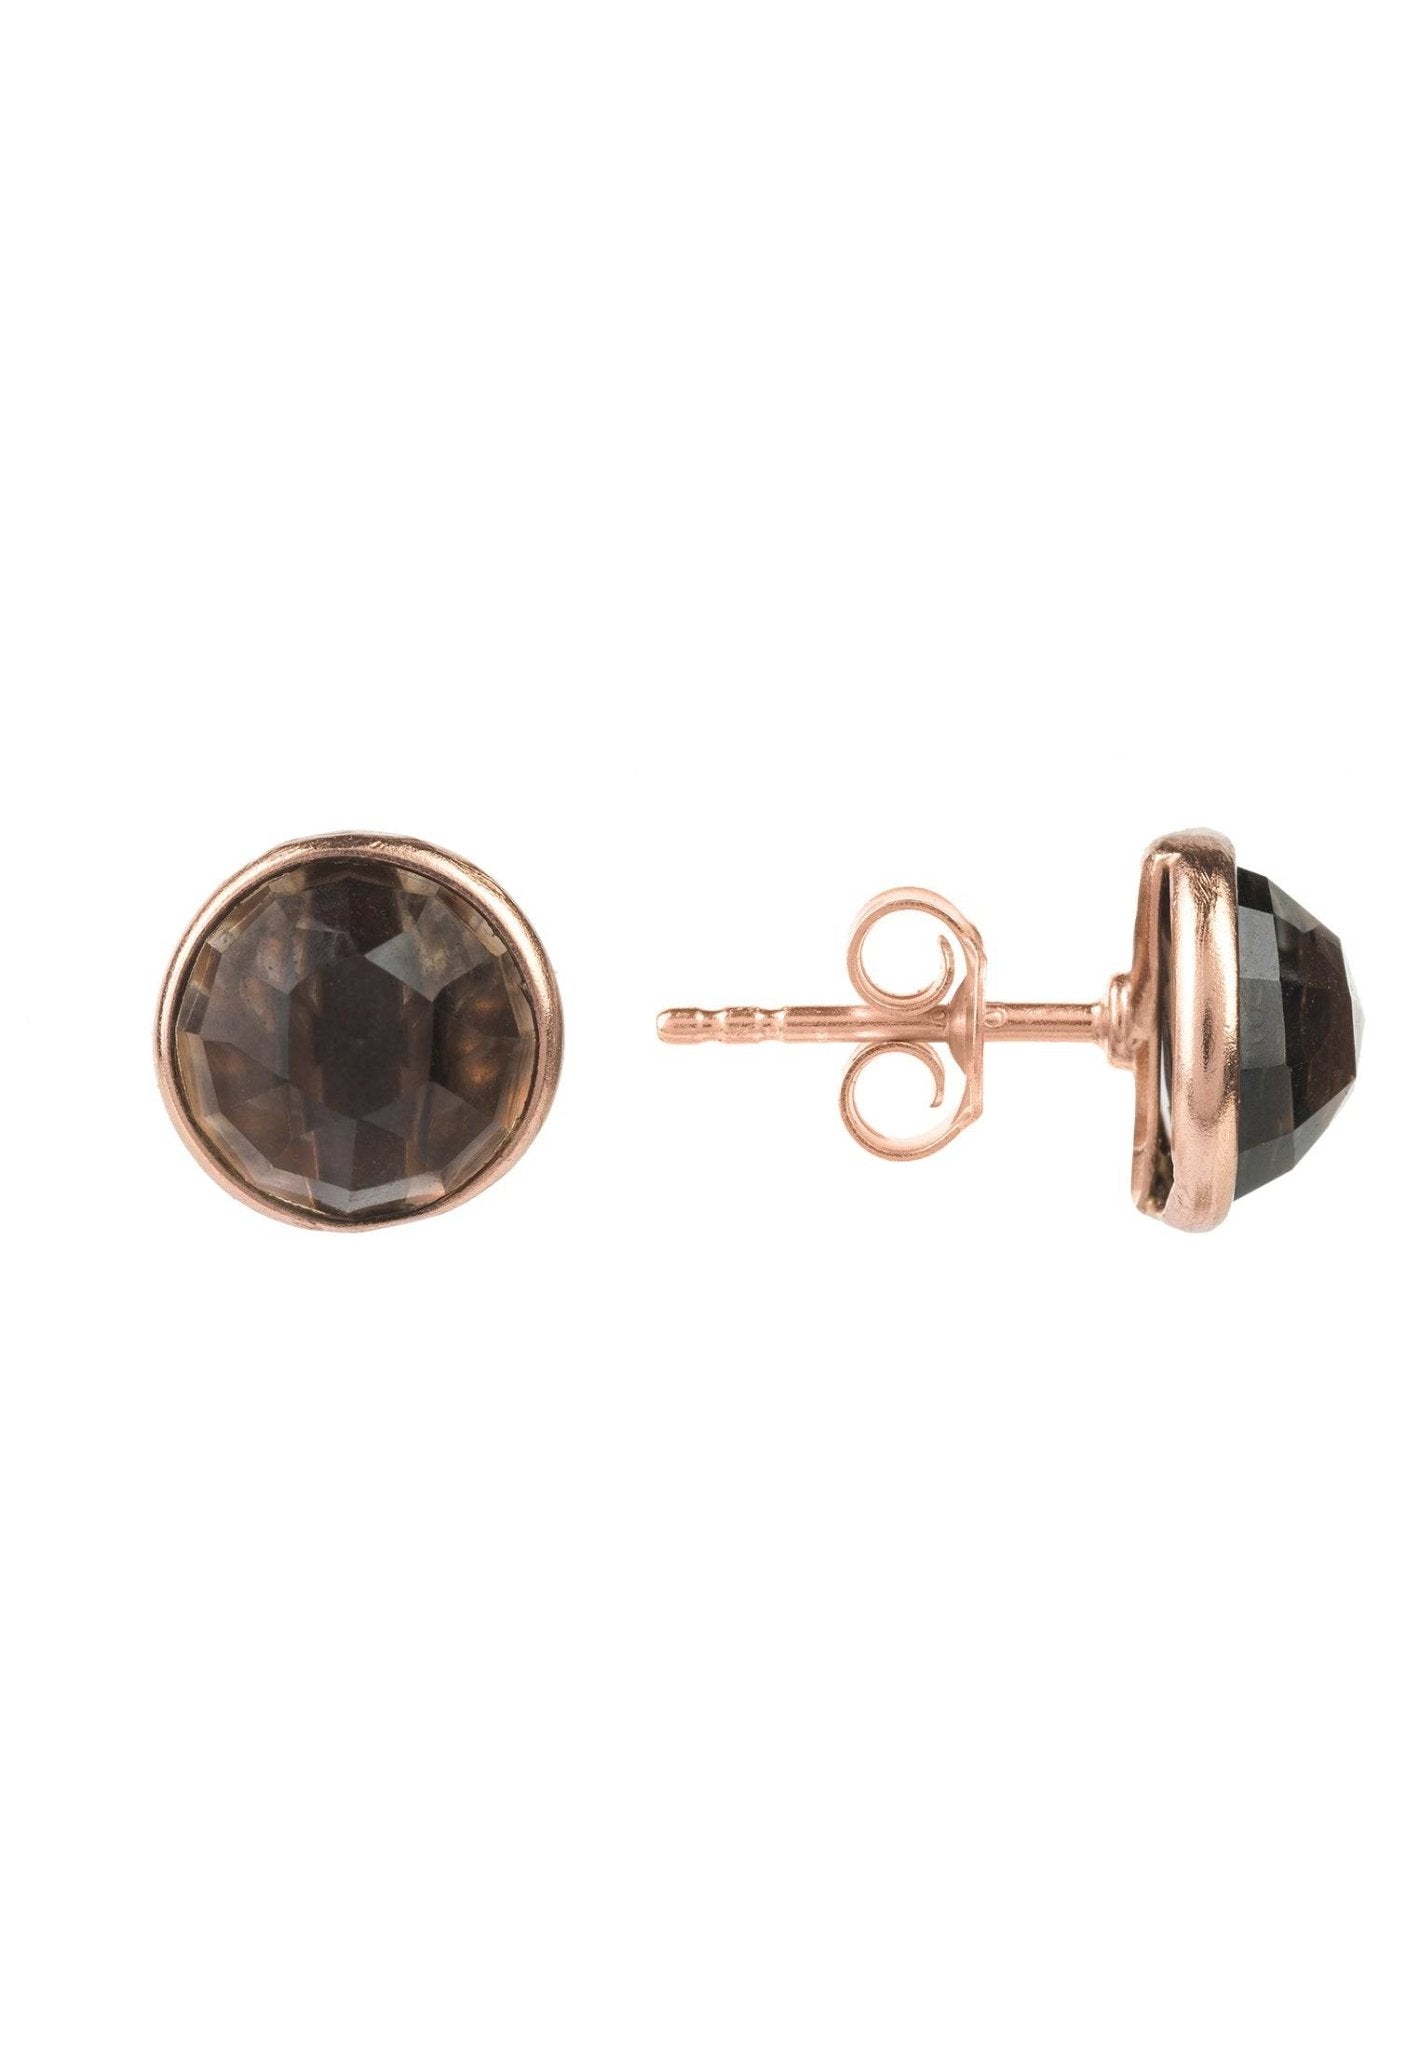 Medium Circle Gemstone Earrings Rosegold Smokey Quartz - LATELITA Earrings